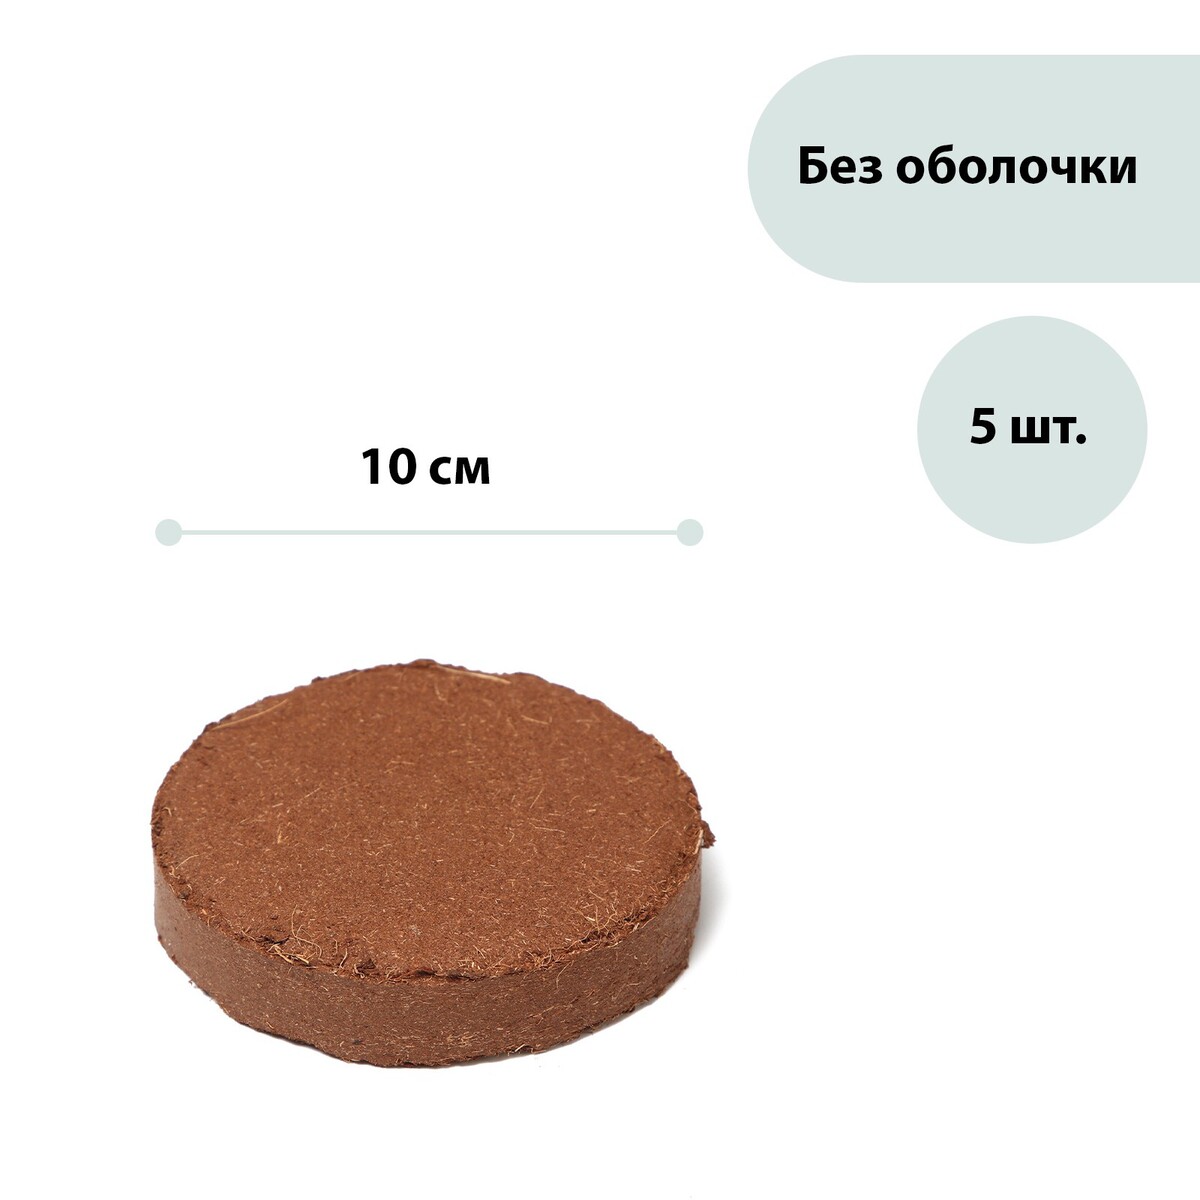 Субстрат кокосовый в таблетках, 4,5 л, d = 10 см, набор 5 шт., без оболочки, greengo субстрат кокосовый в брикете 65 л универсальный greengo